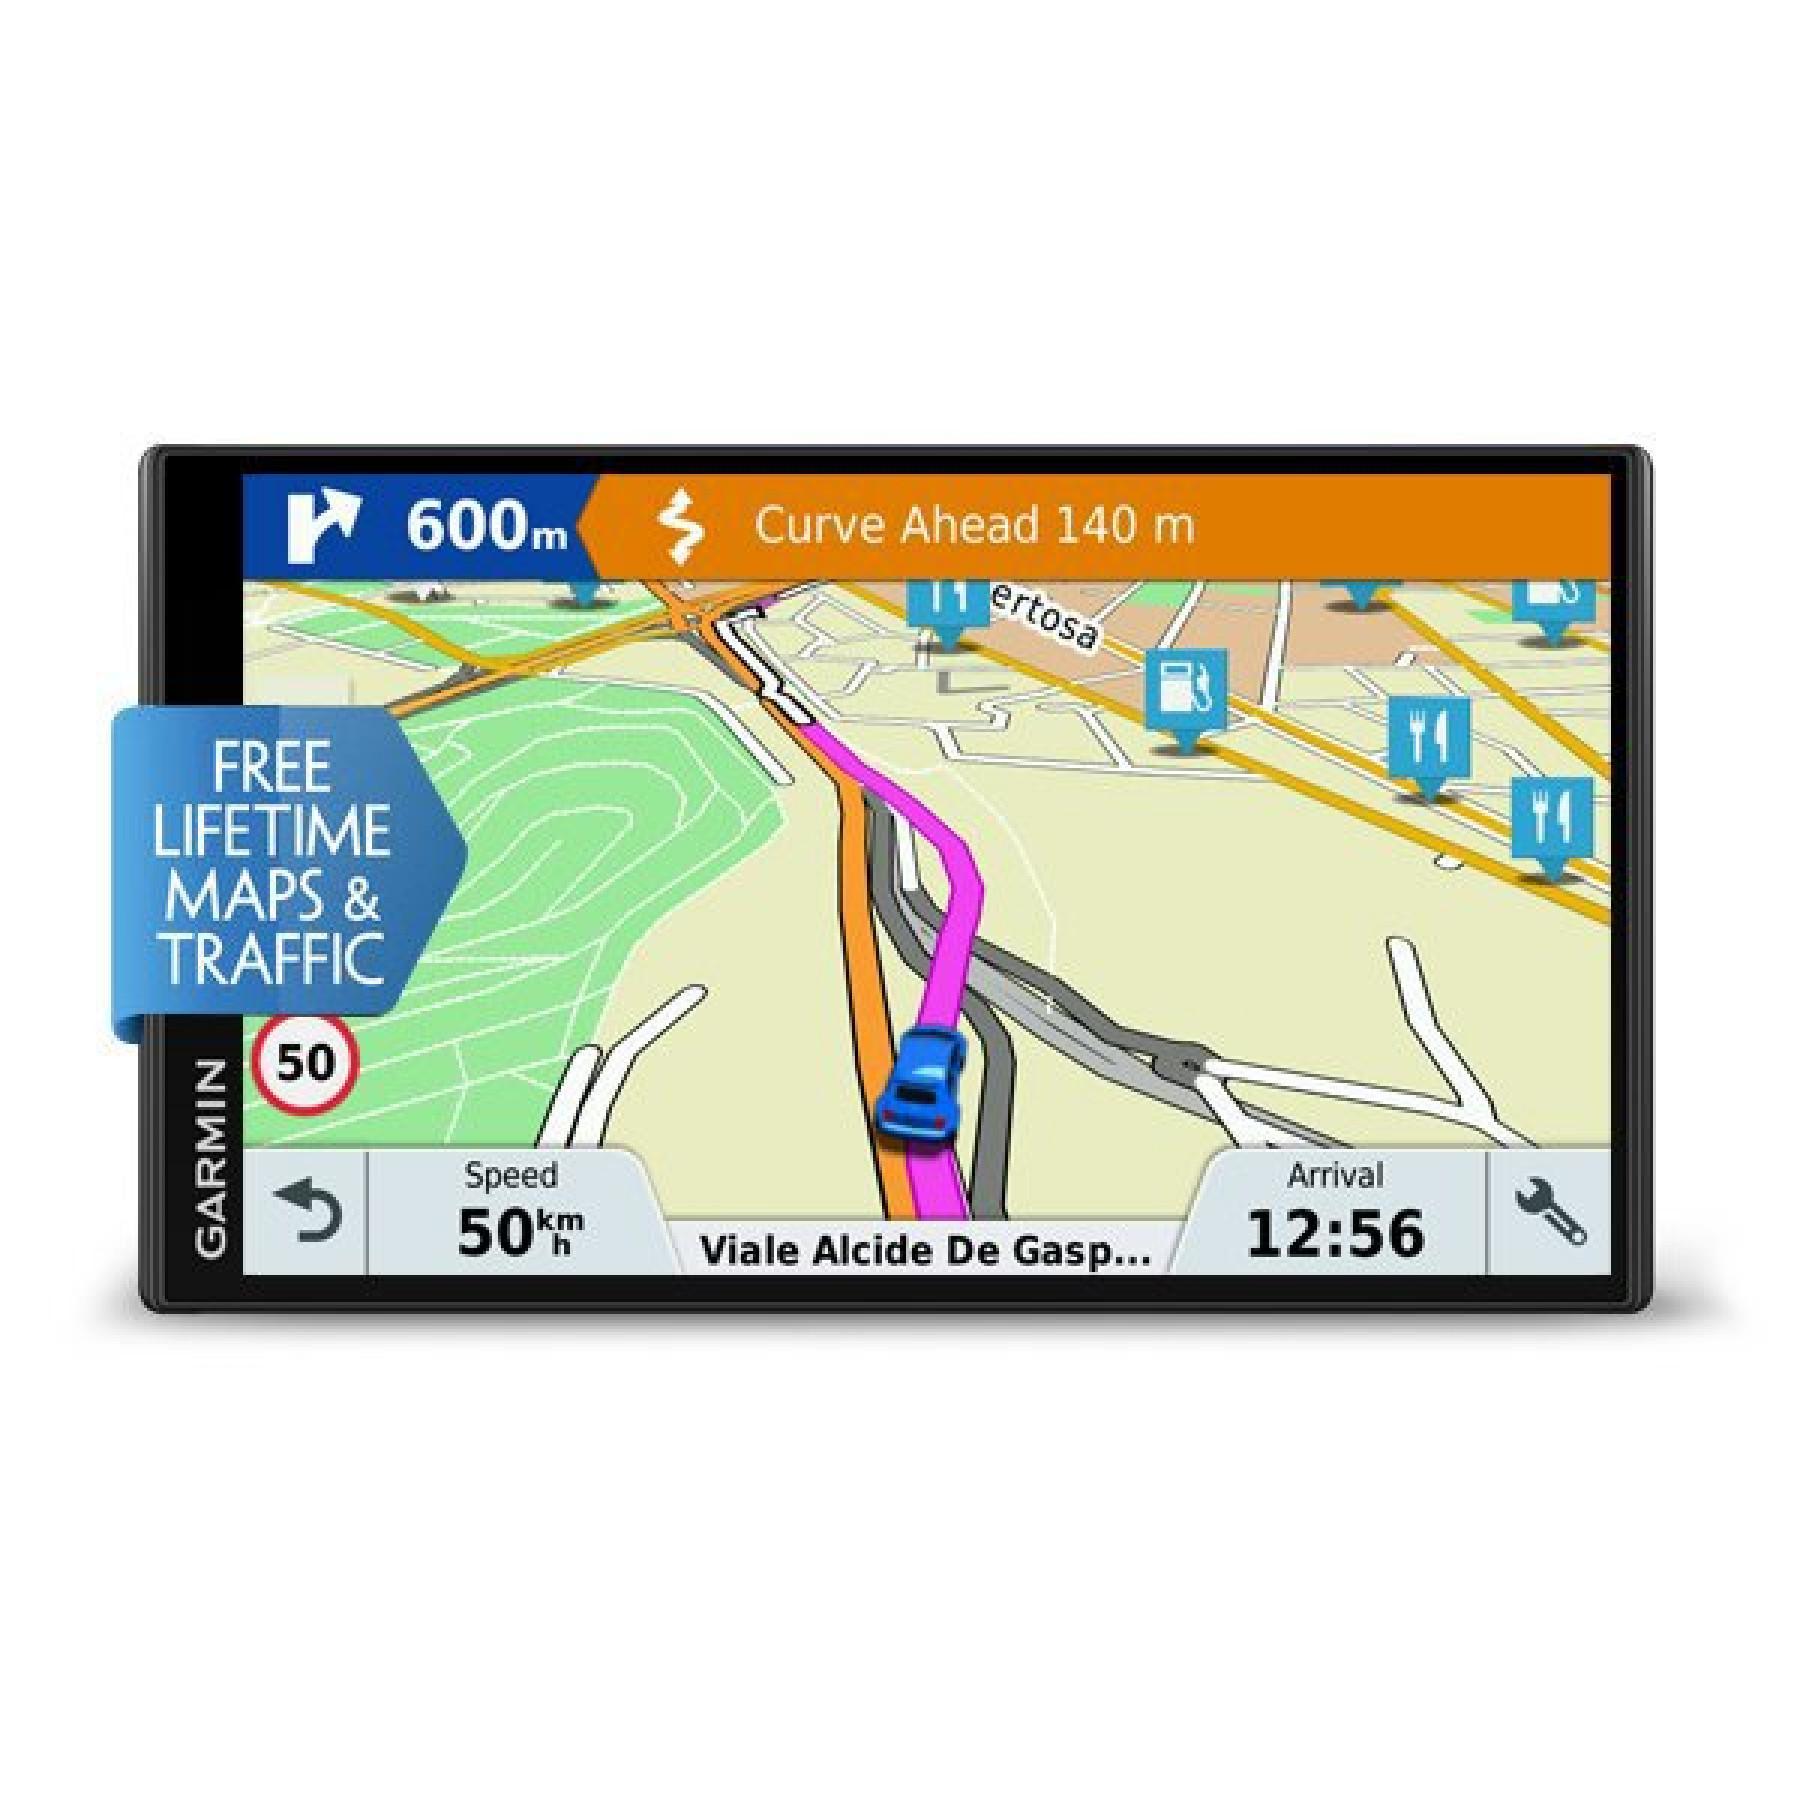 GPS Garmin drivesmart 61 lmt-s europe du sud